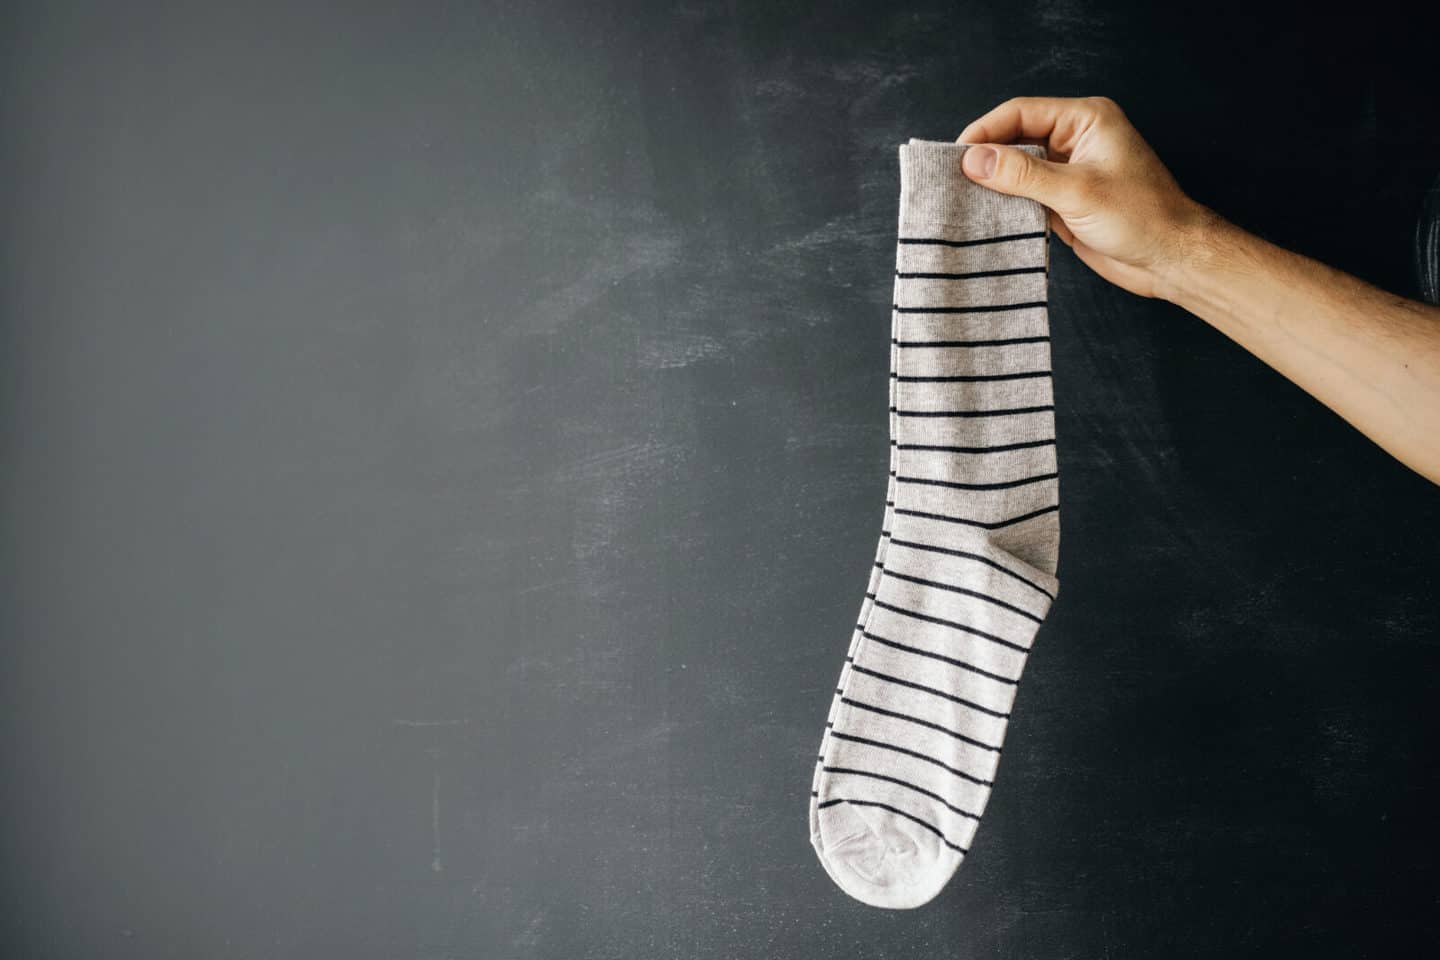 MEDICAL COOL Socken mit 60%-Anteil von biogenem Silber gegen Fussgeruch.Knielang 